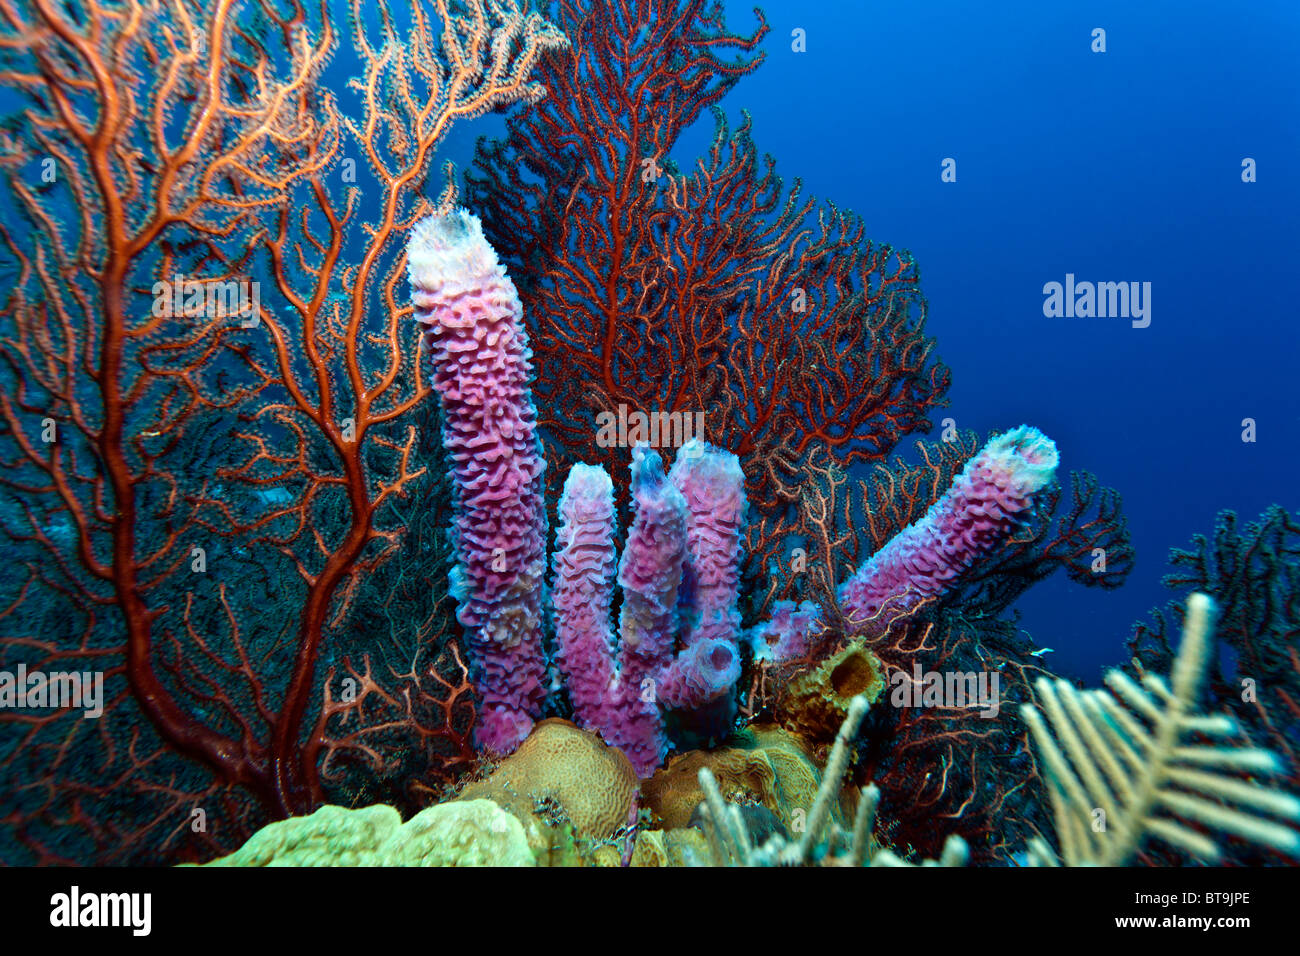 Deep water Gorgonian sea fan with purple vase sponges Stock Photo